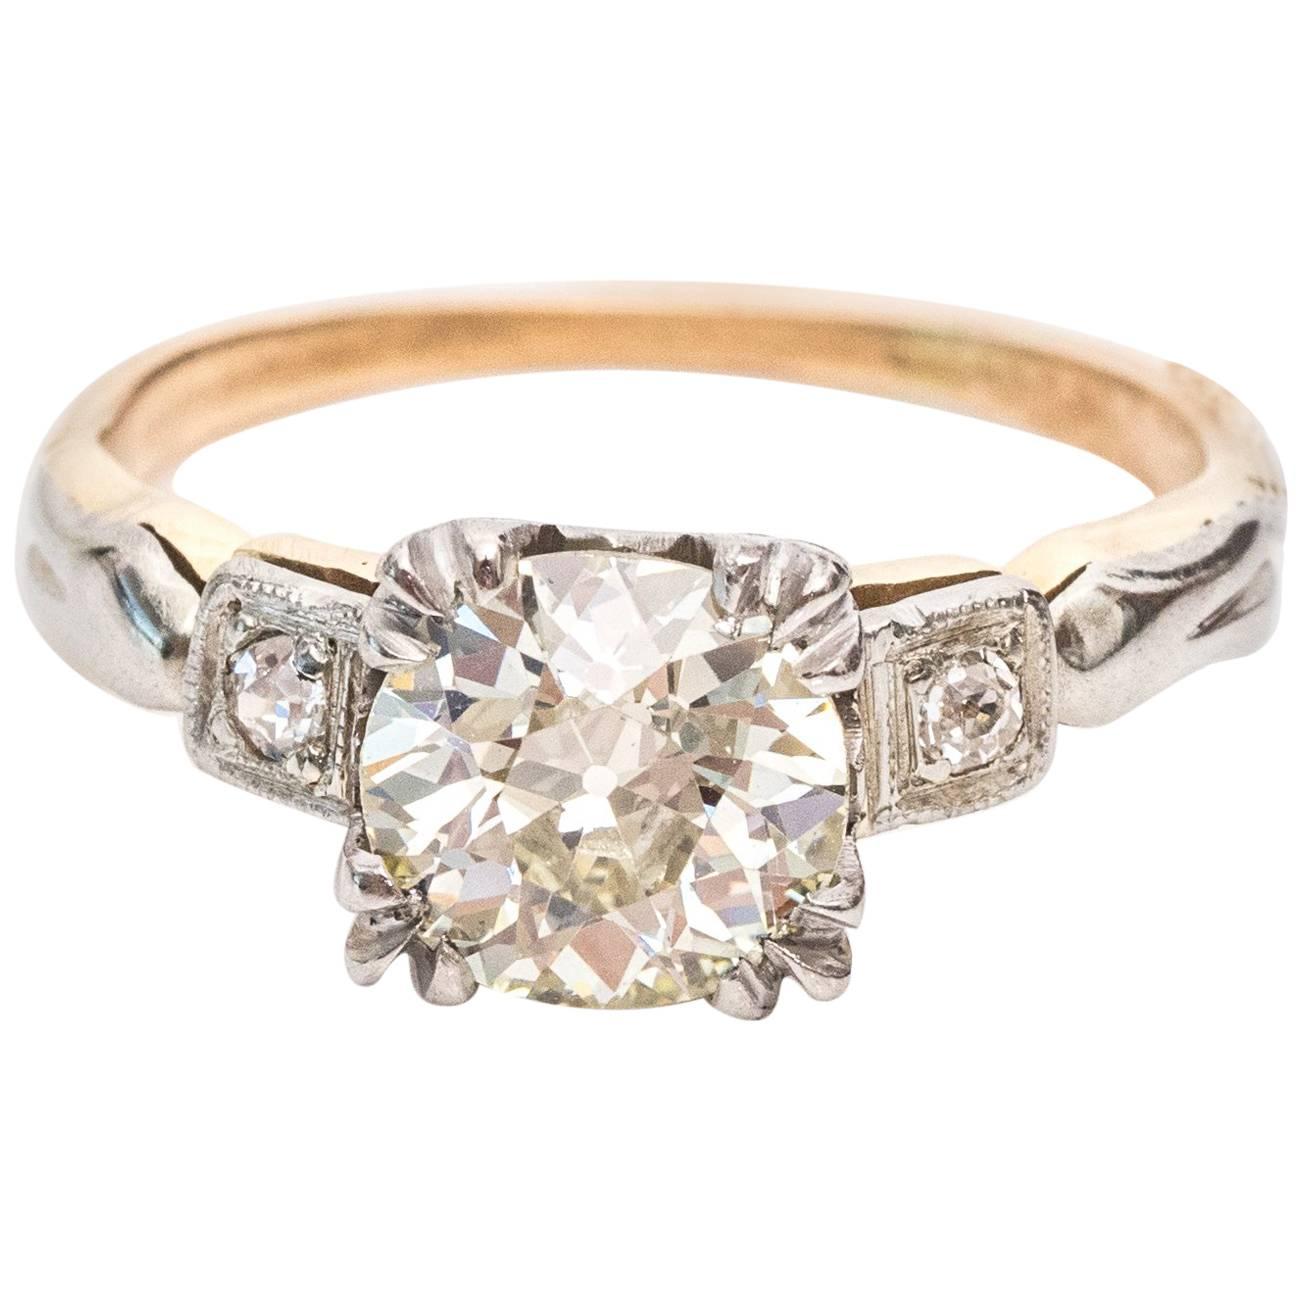 1910 GIA Certified 1.19 Carat Diamond 14 Karat Yellow Gold Engagement Ring